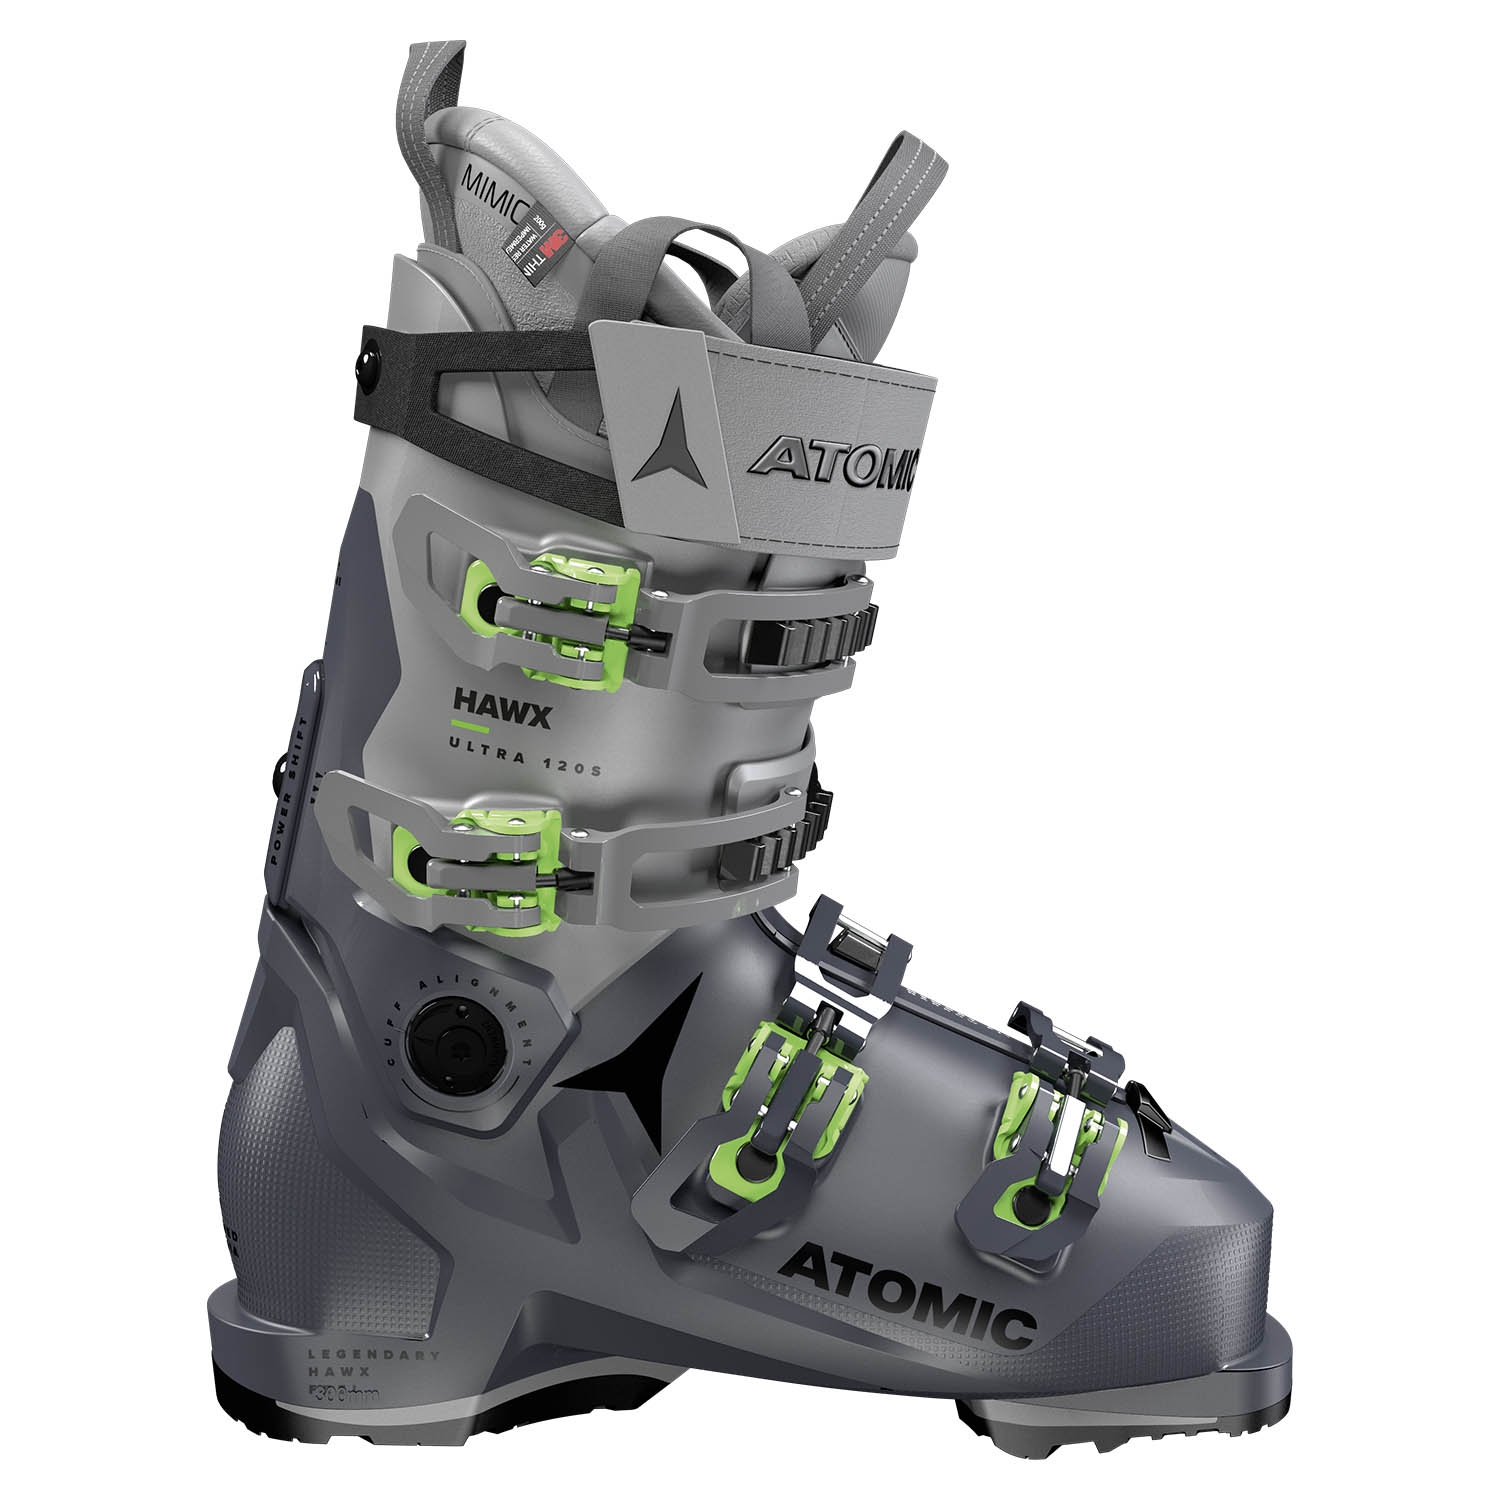 Ski Boots | Ski Boot Fitting | Ski Touring Boots - Snowtrax